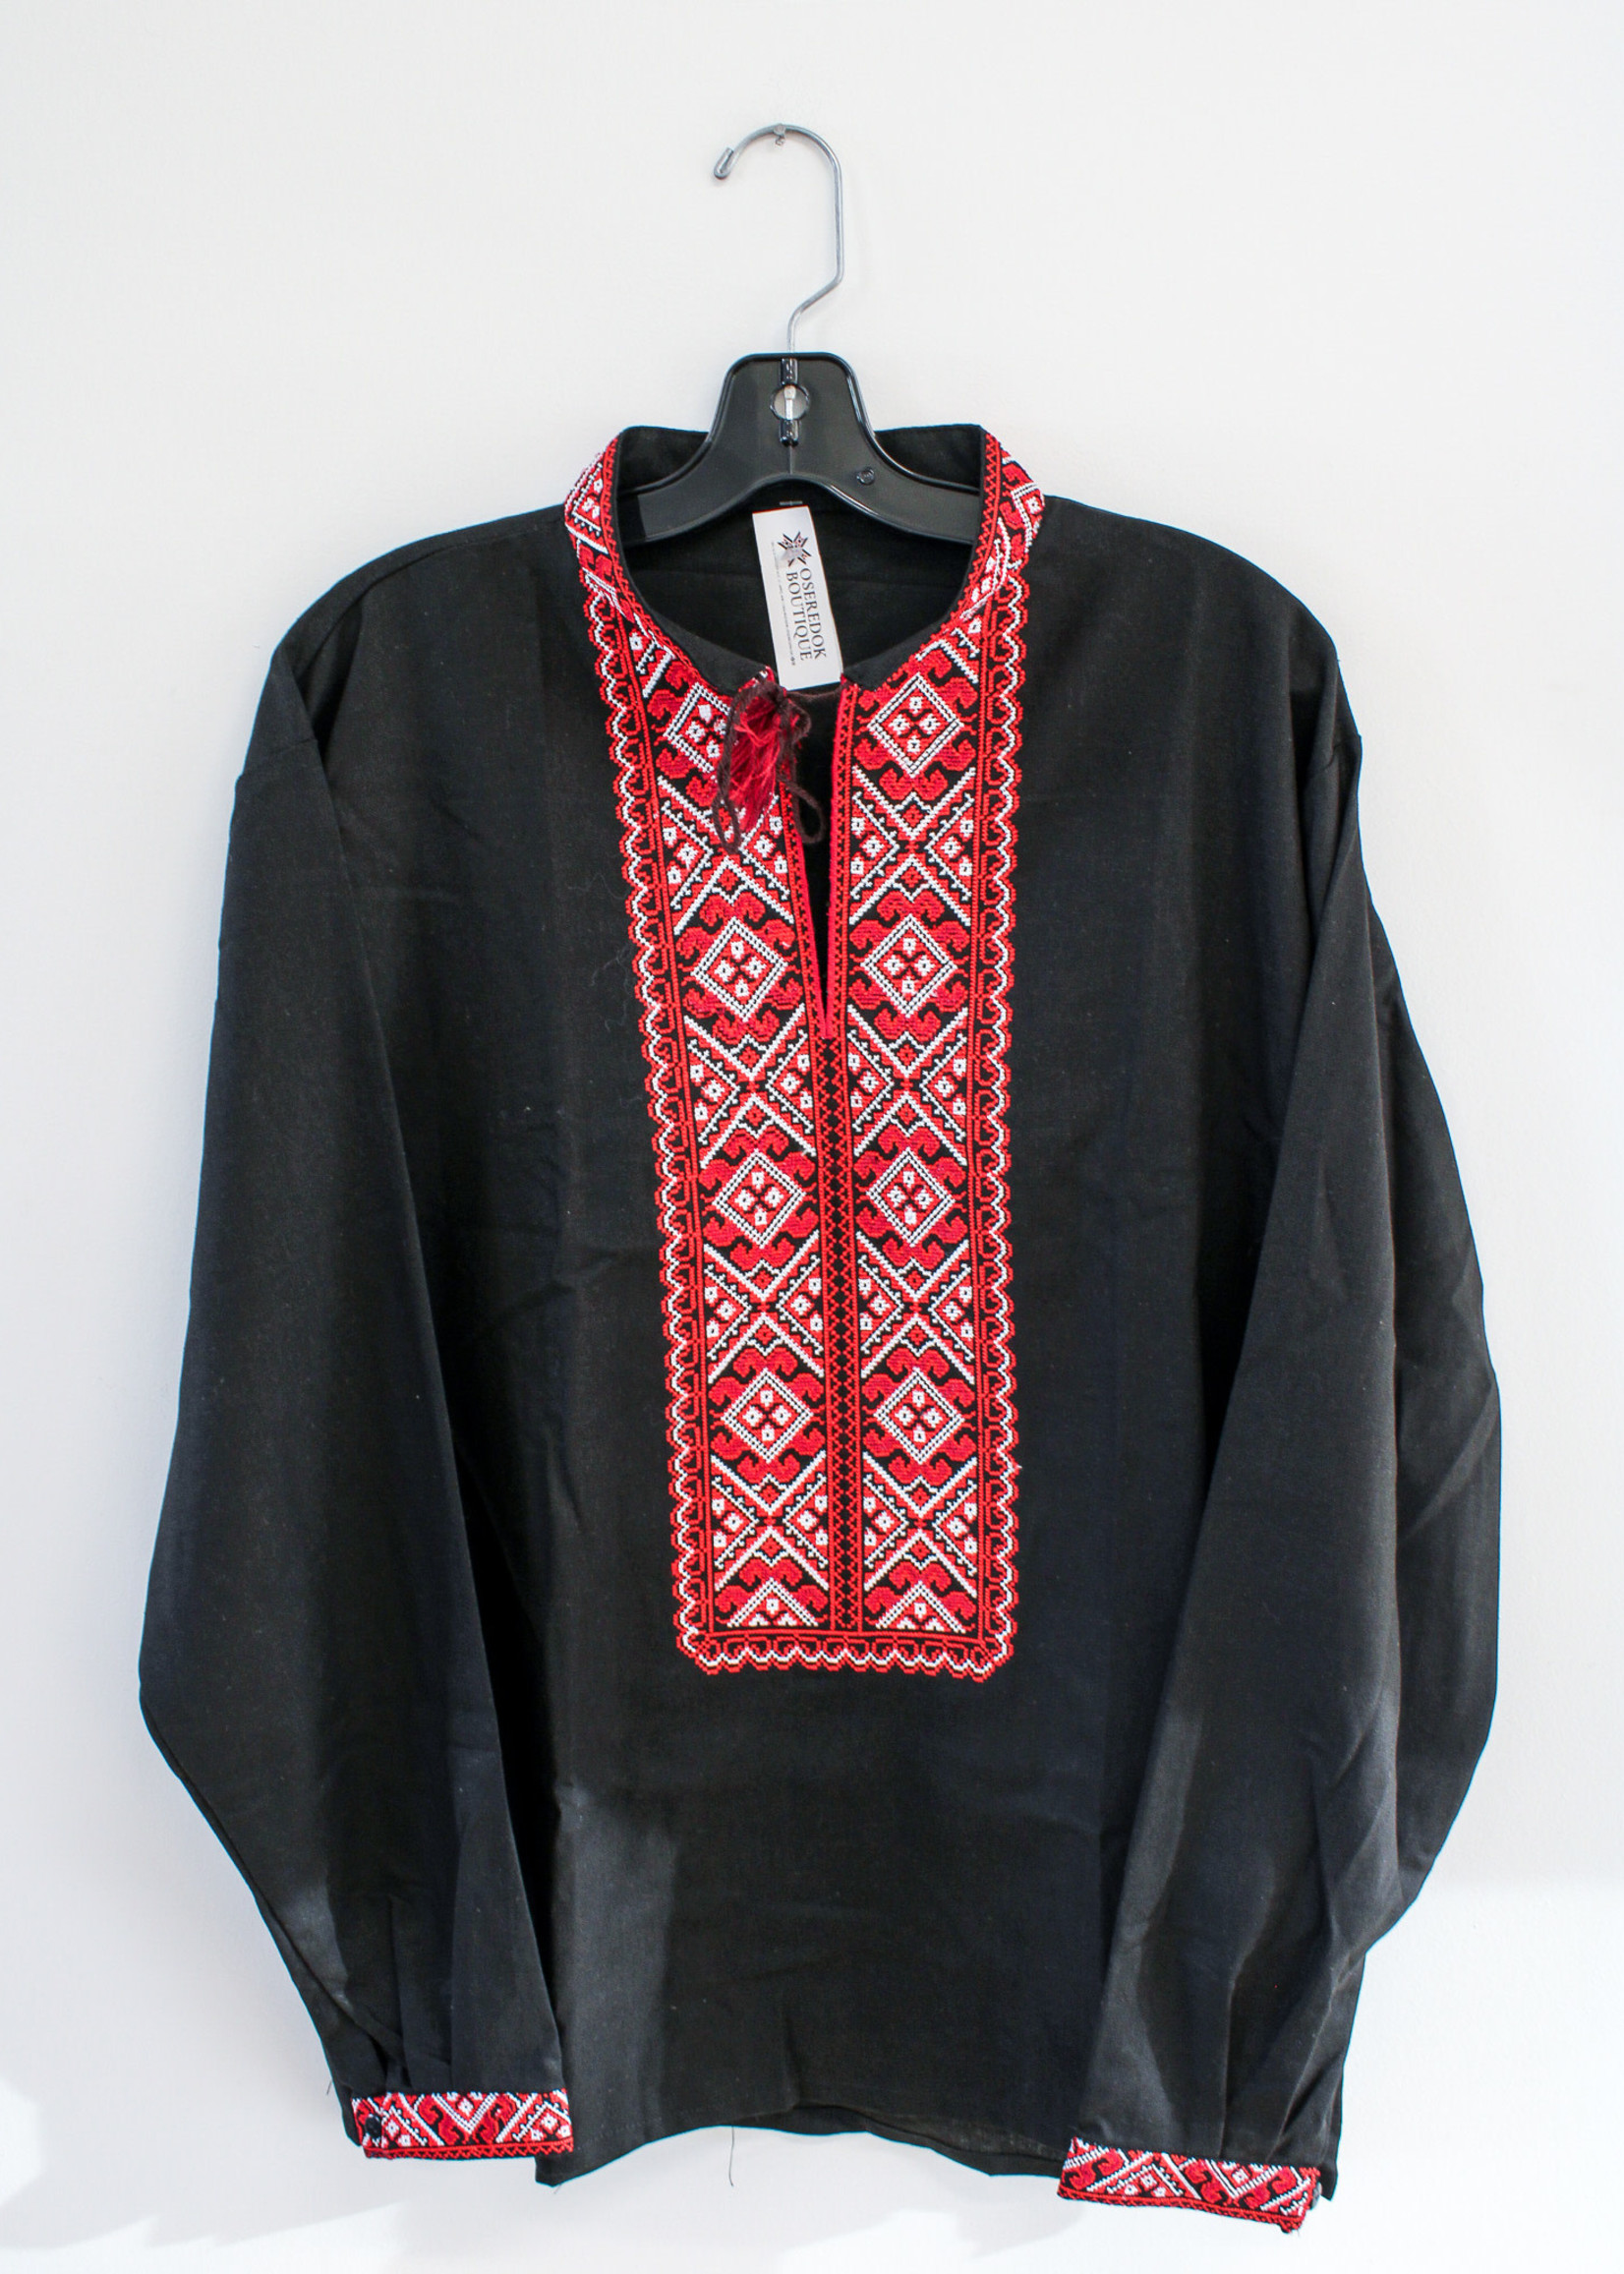 APPAREL - (M) Vyshyvanka Black/ Red Embroidery